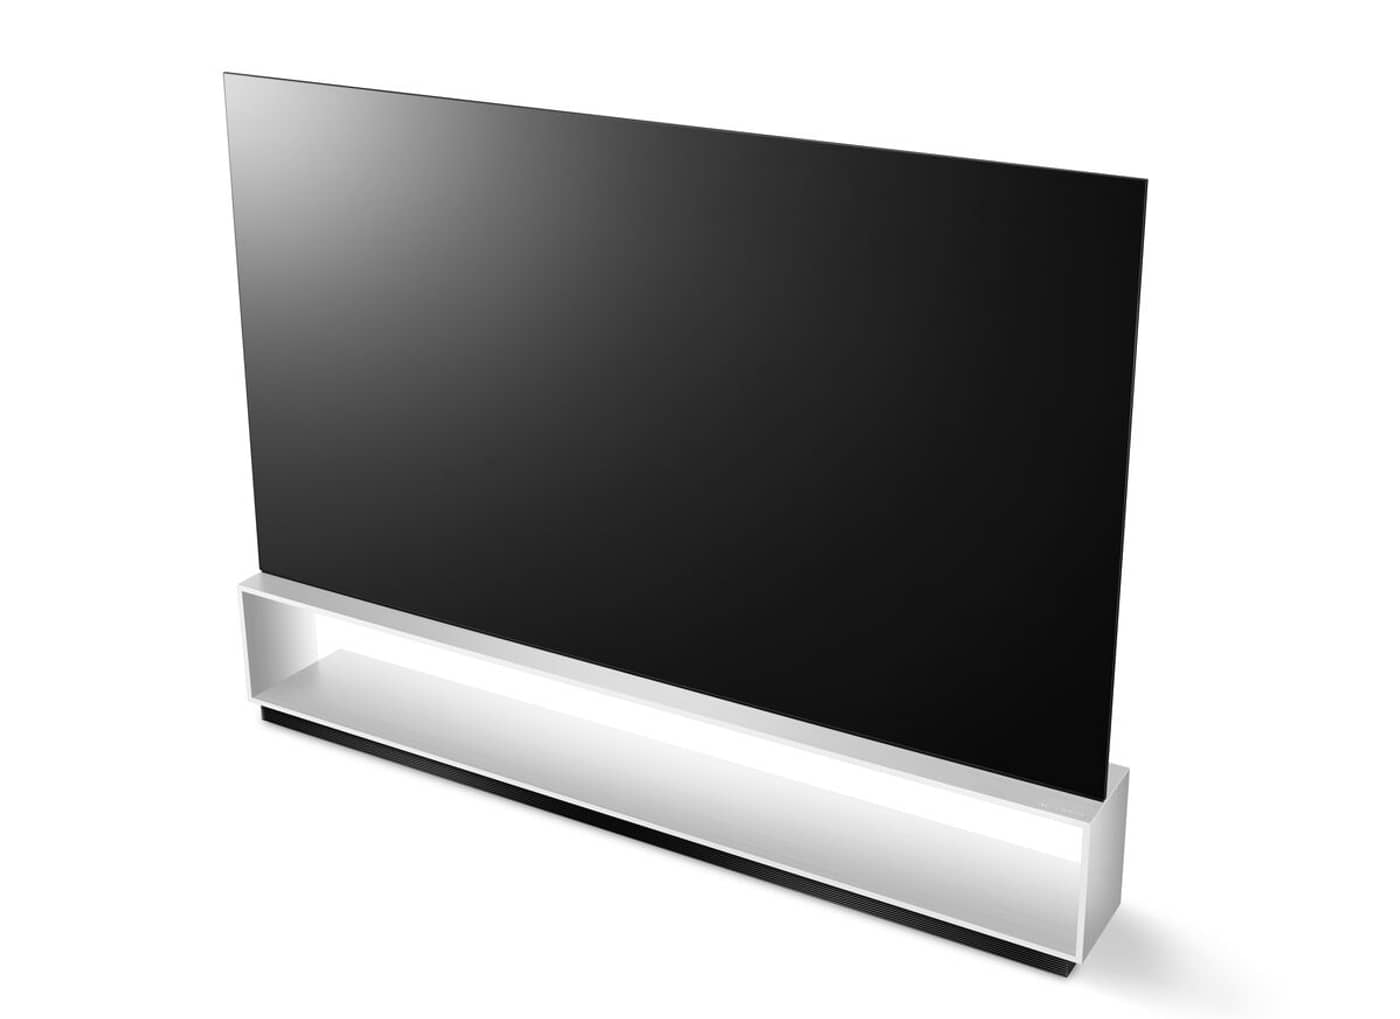 LG ra mắt OLED TV lớn nhất thế giới với kích thước 88-inch, độ phân giải 8K